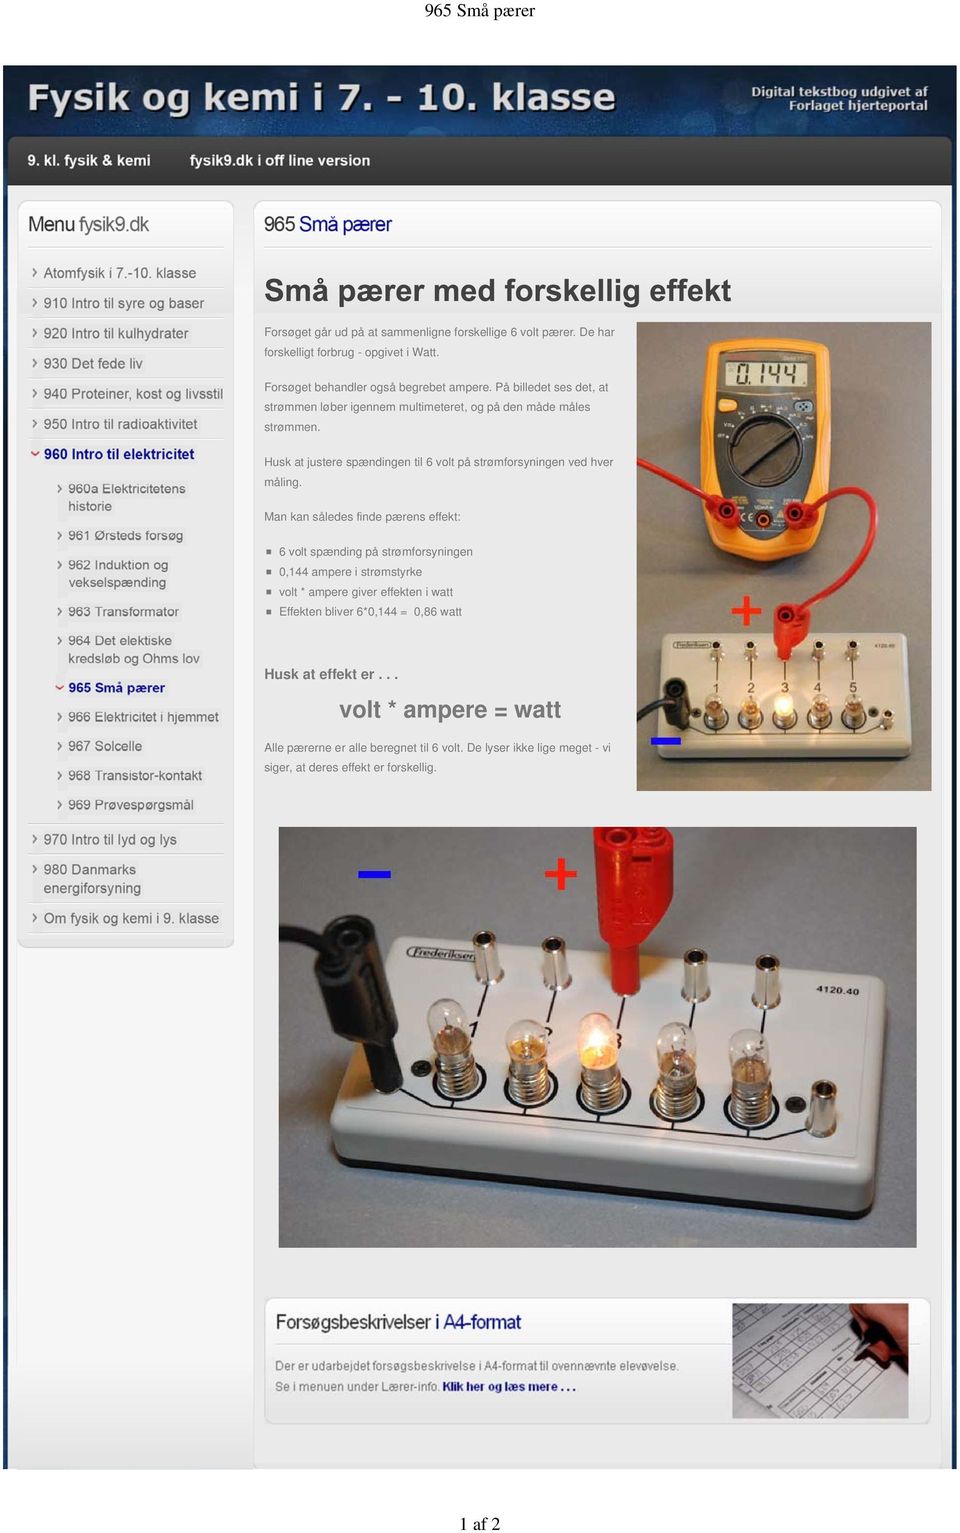 Husk at justere spændingen til 6 volt på strømforsyningen ved hver måling.